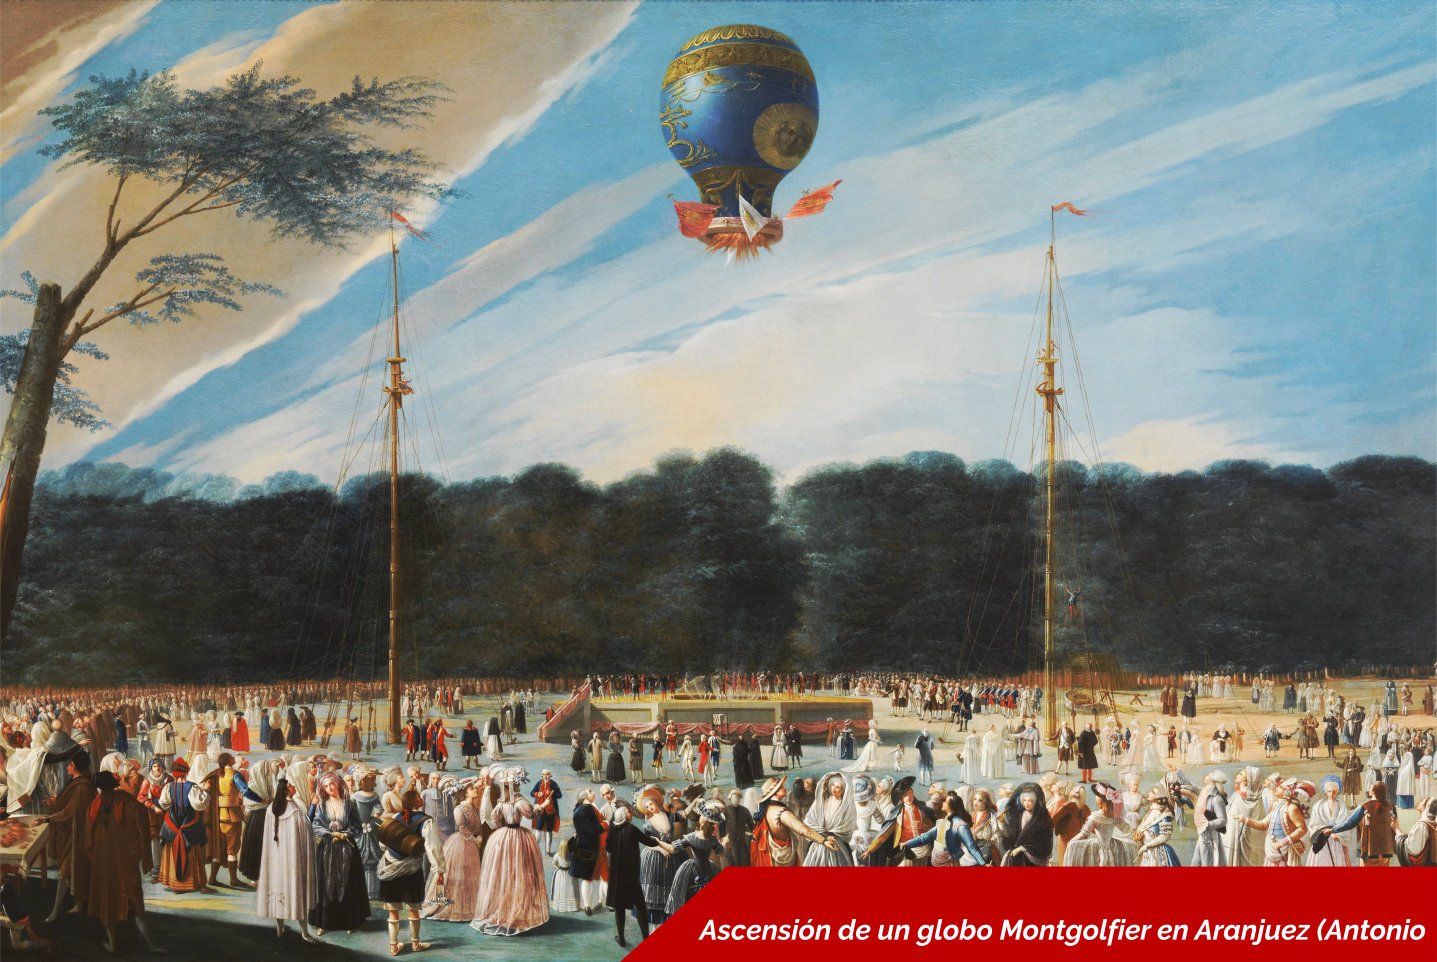 Ascensión de un globo Montgolfier en Aranjuez (Antonio Carnicero- 1784). Wikimedia